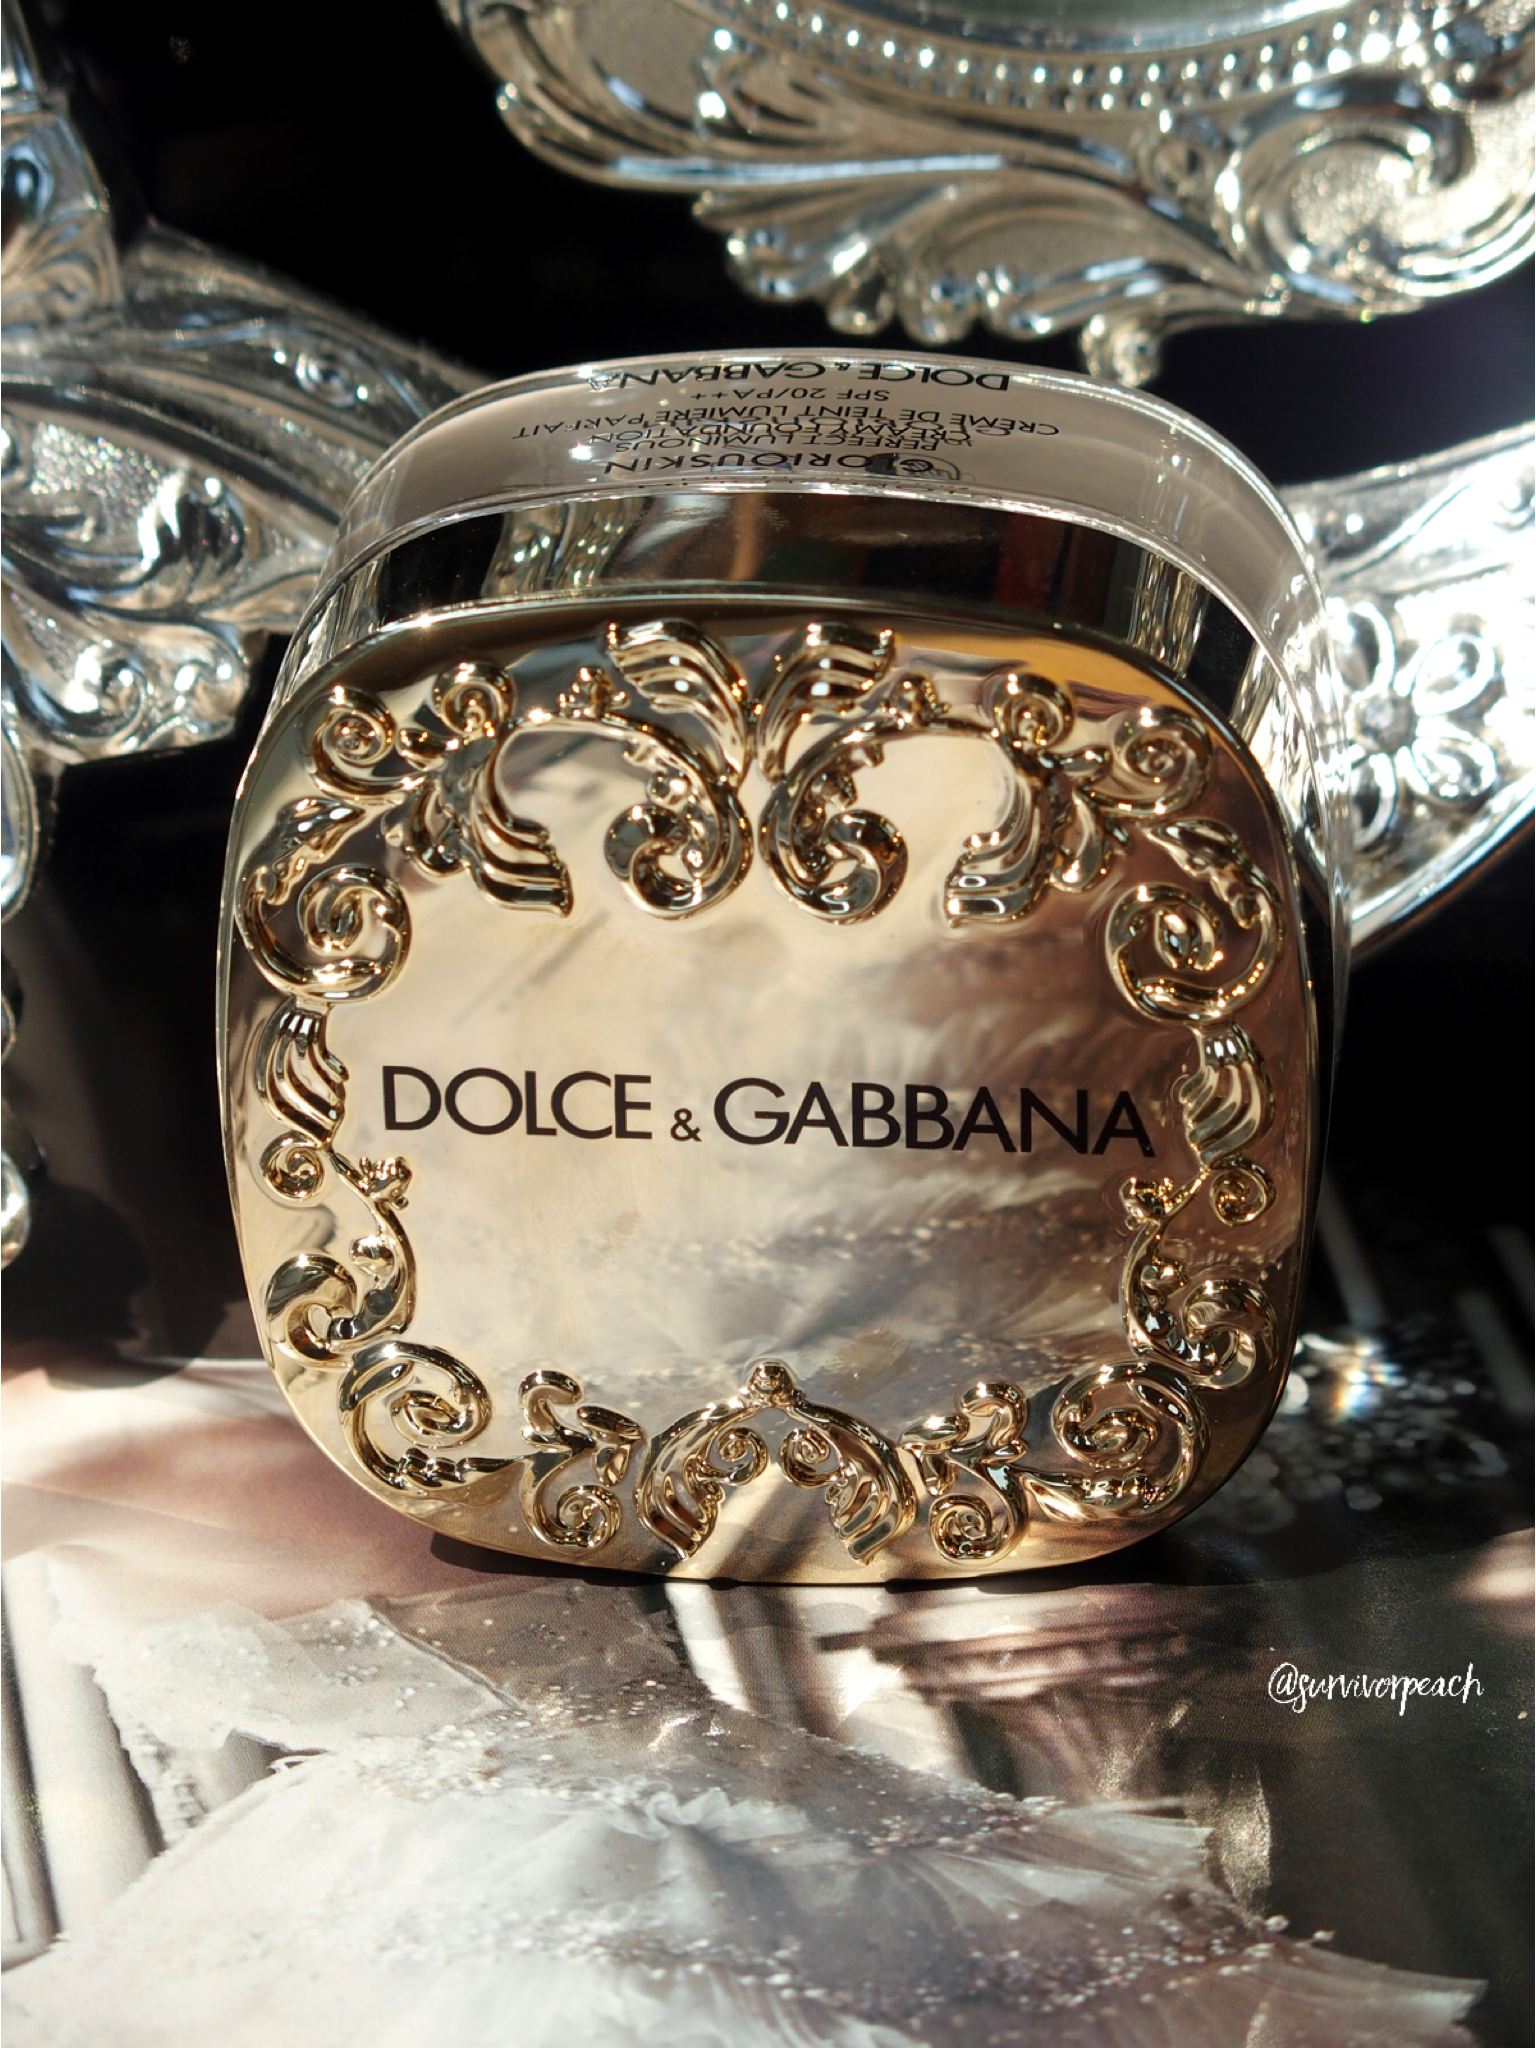 Крем дольче габбана. Дольче Габбана gloriouskin. Dolce Gabbana gloriouskin. Тональный крем Дольче Габбана. Dolce Gabbana gloriouskin 330 Almond.